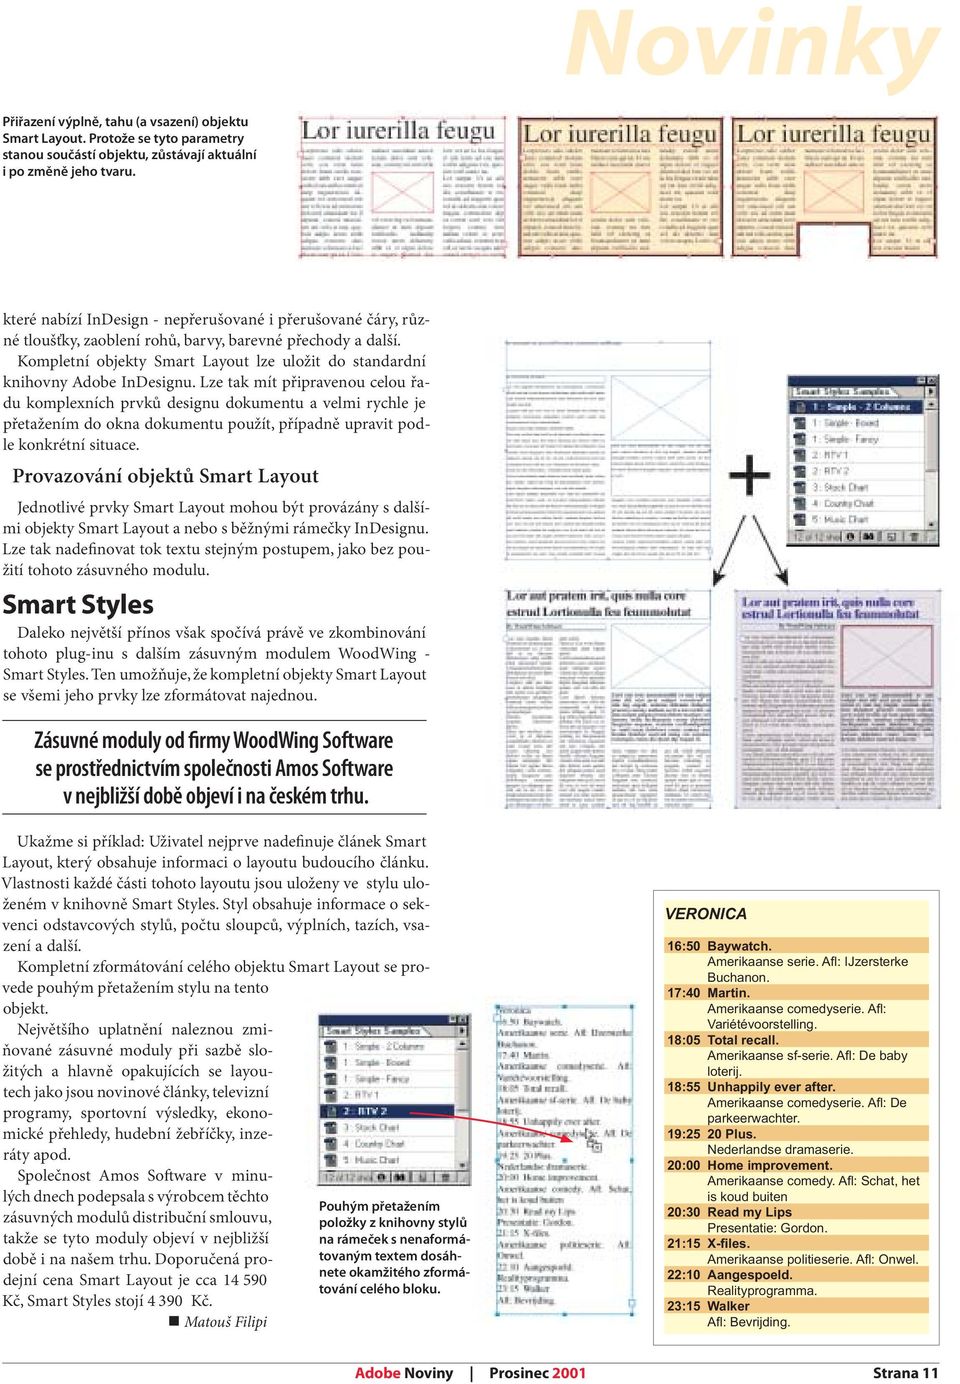 Kompletní objekty Smart Layout lze uložit do standardní knihovny Adobe InDesignu.